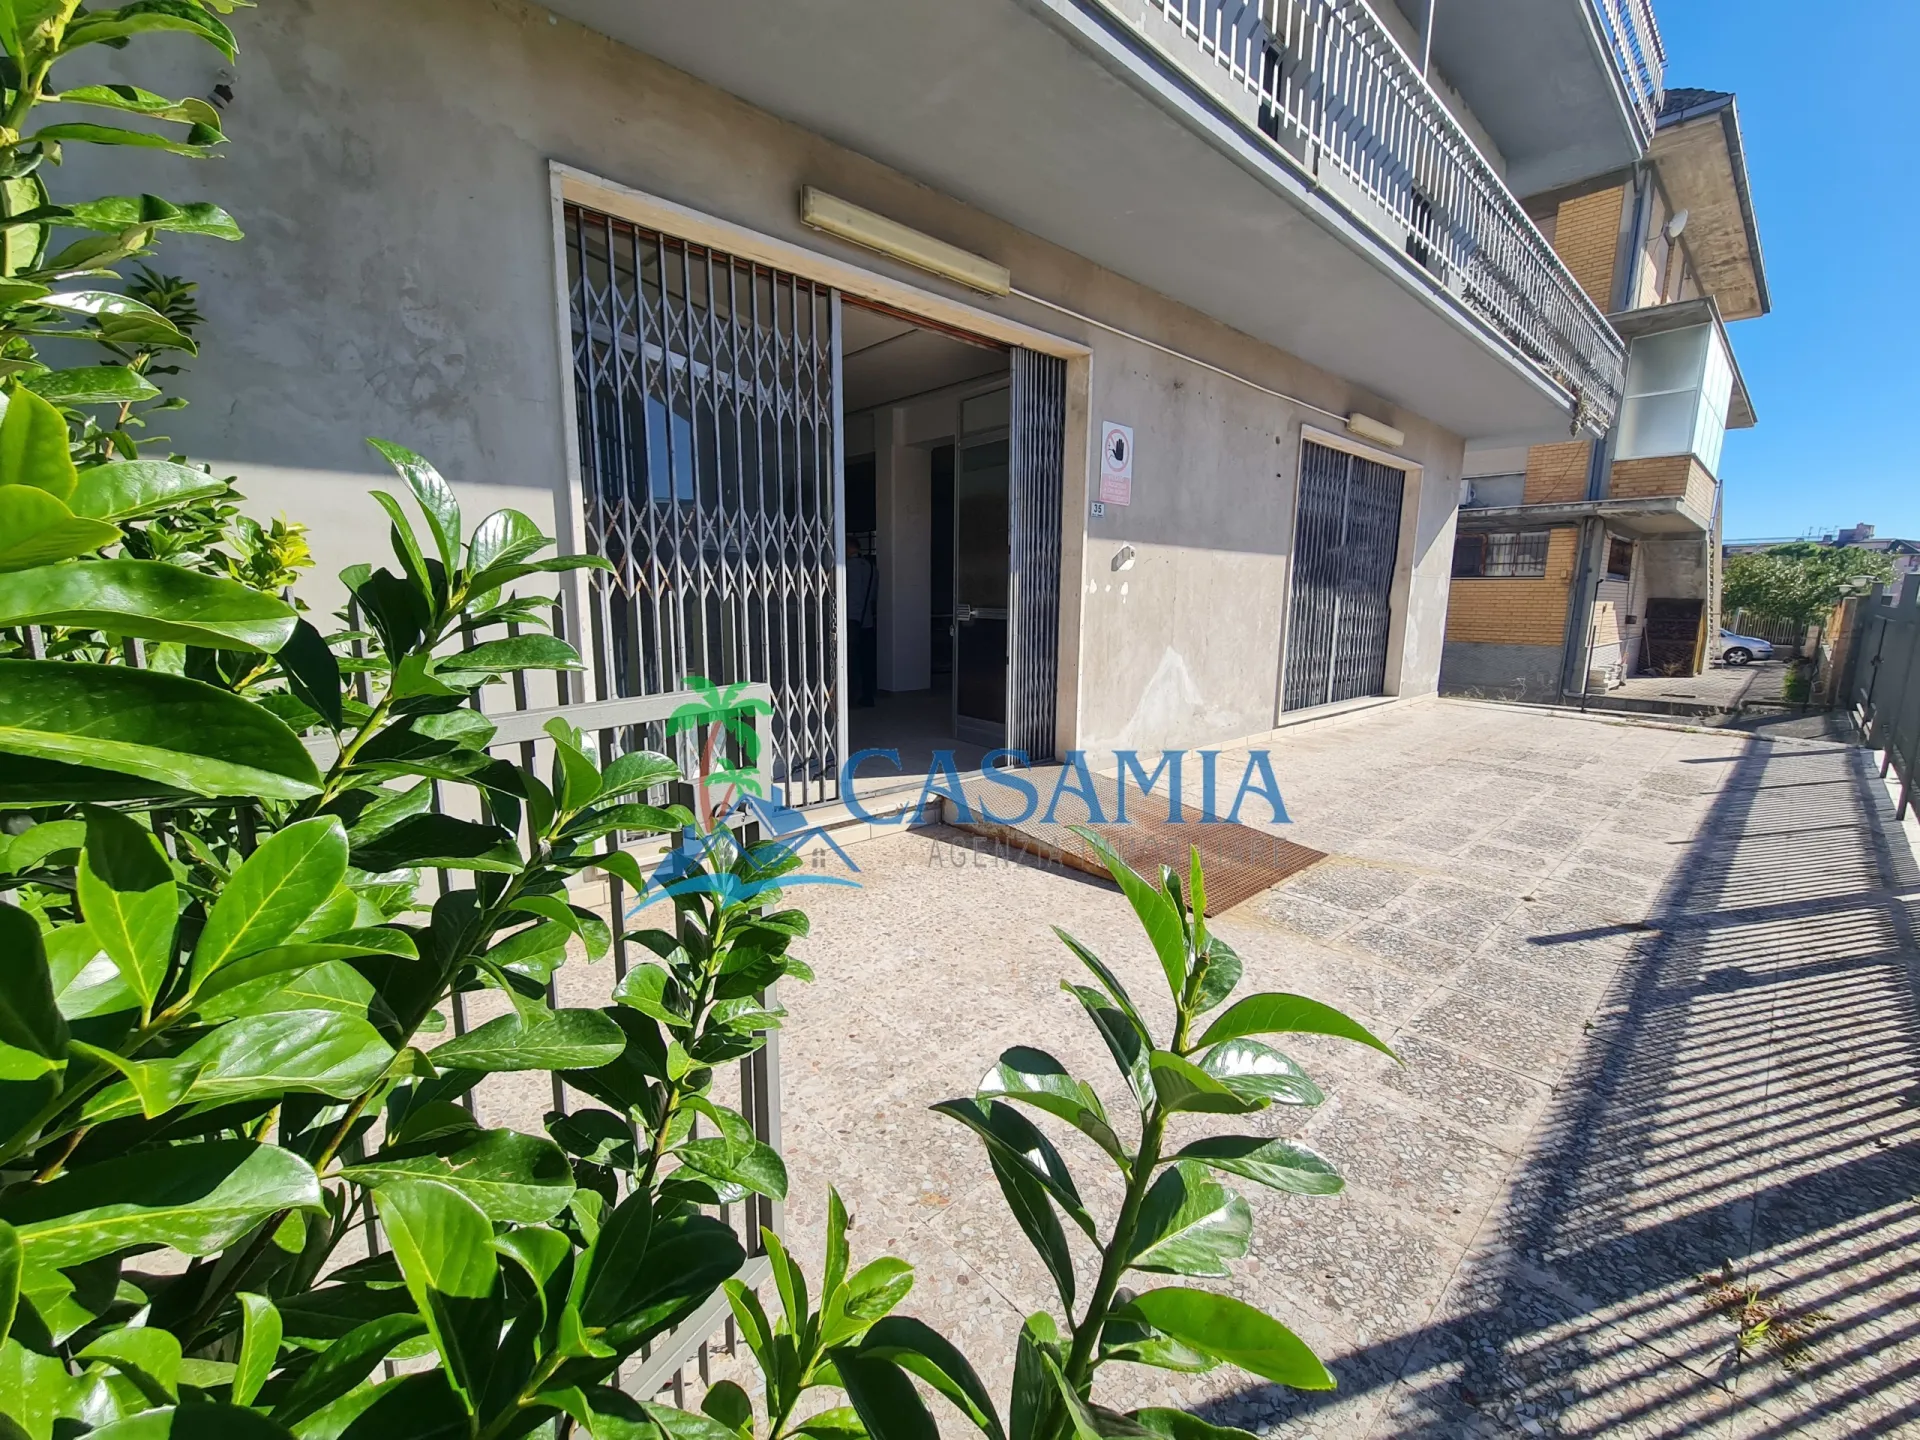 Immagine per Appartamento in vendita a Sant'Egidio alla Vibrata via Vespucci 35